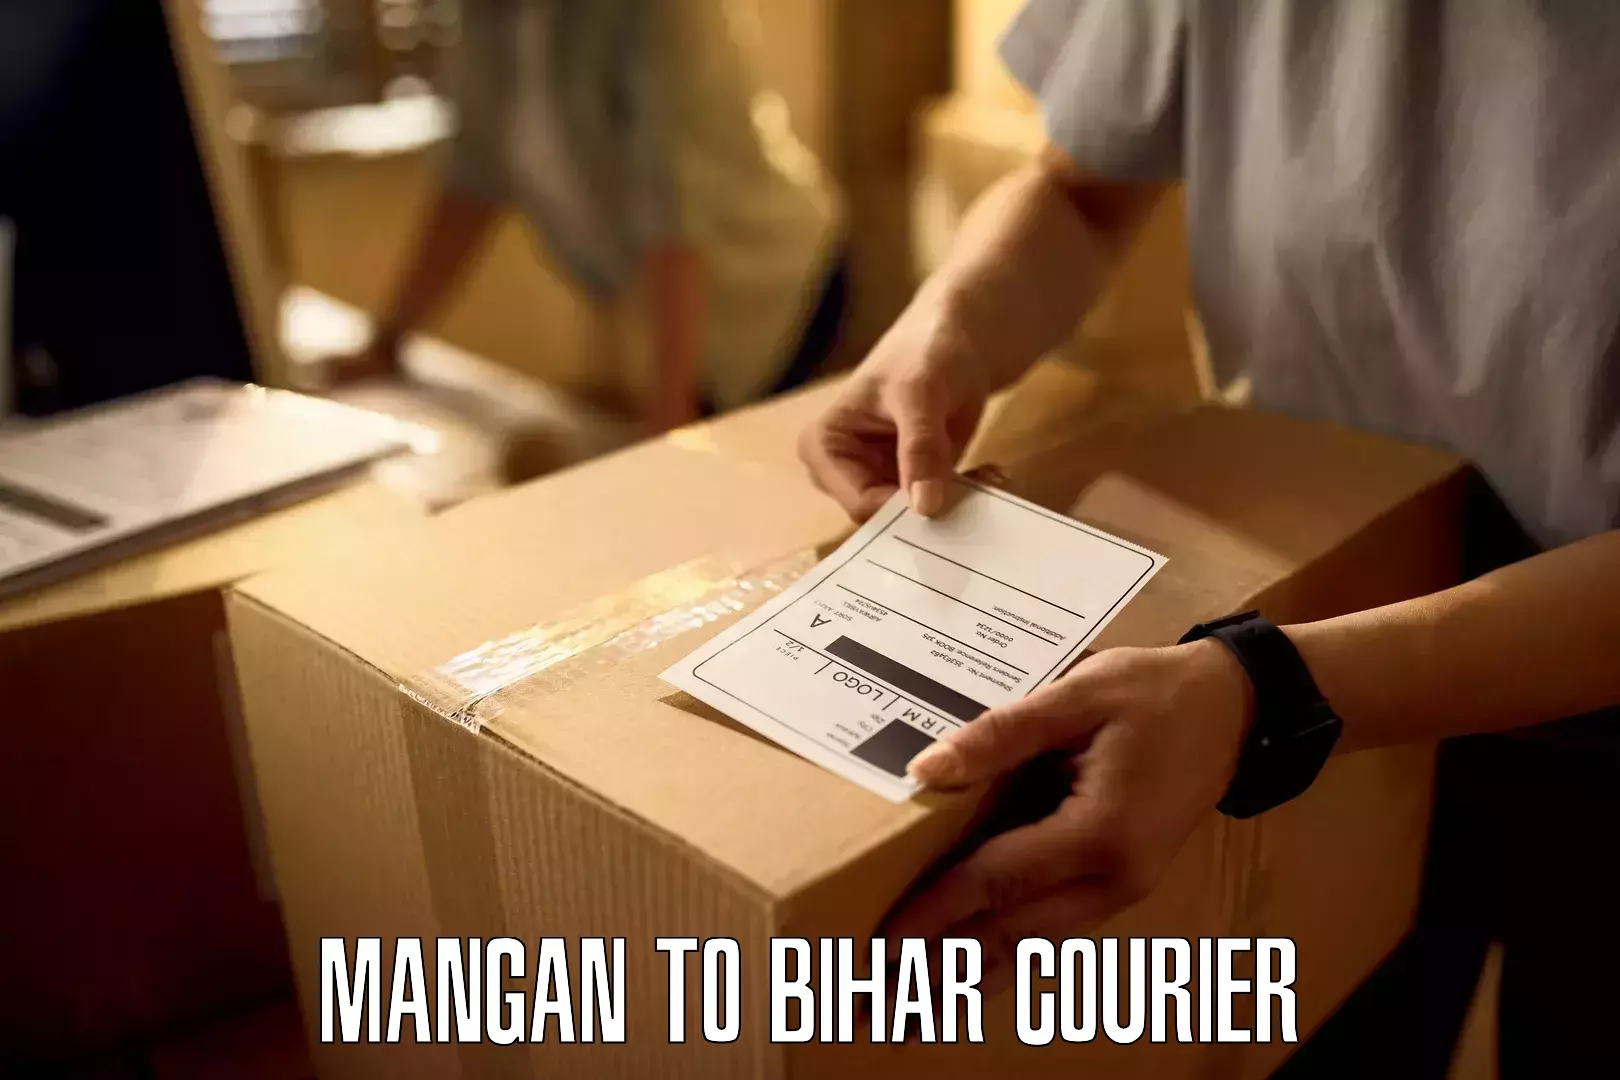 24/7 courier service Mangan to Bihar